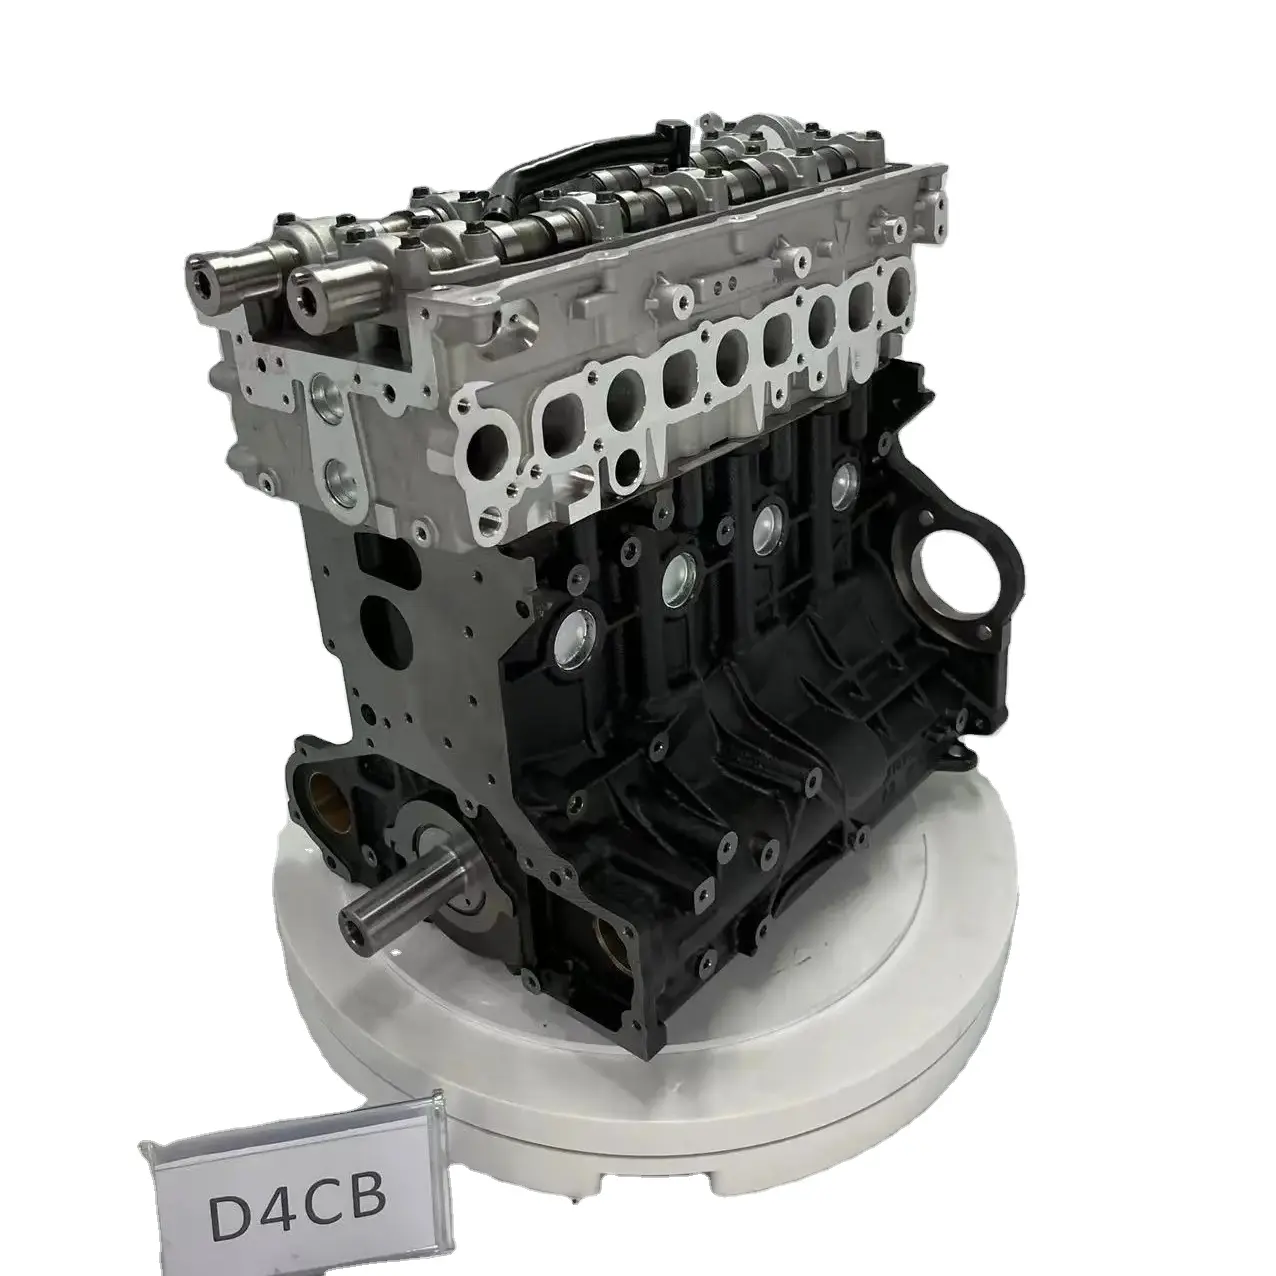 현대 기아 엔진 용 D4CB 2.5L 유로 3 유로 5 D4BB D4BH D4HB 디젤 엔진 G4KE 엔진 실린더 블록 어셈블리용 짧은 블록